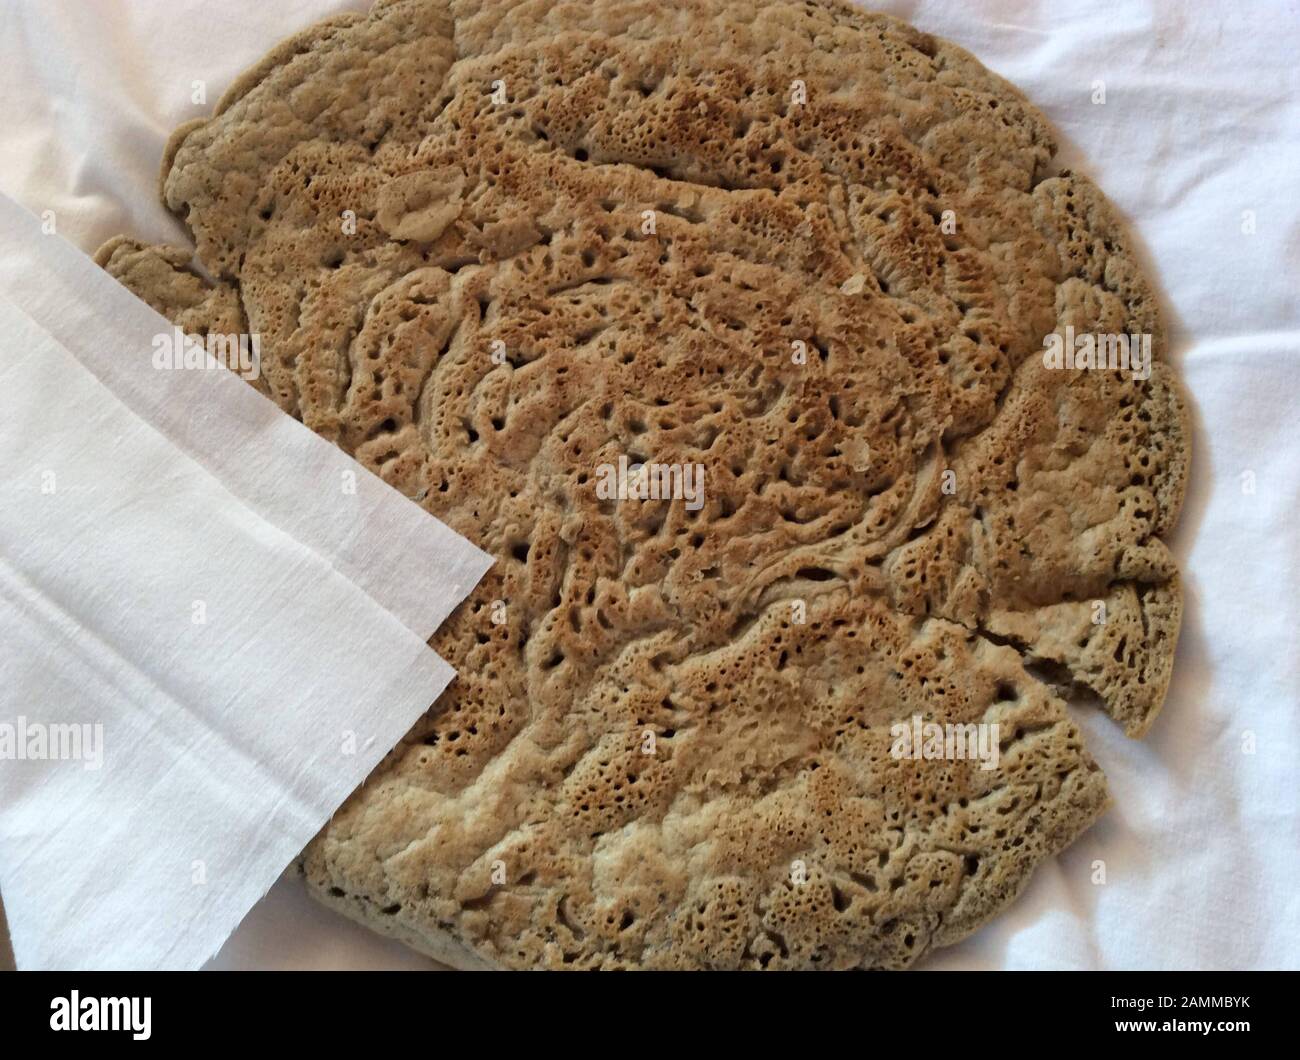 Pain injera à base de farine de thé. Teff également appelé millet nain, appartient à la famille de l'herbe douce. L'aire de répartition naturelle est en Éthiopie et en Érythrée, mais l'espèce est également cultivée dans d'autres régions tropicales et subtropicales. Les graines sont sans gluten et riches en acides gras essentiels. Ce type de millet est le grain le plus important en Ethiopie. Il est transformé en pain plat et en bière ou est également utilisé comme aliments pour animaux [traduction automatique] Banque D'Images